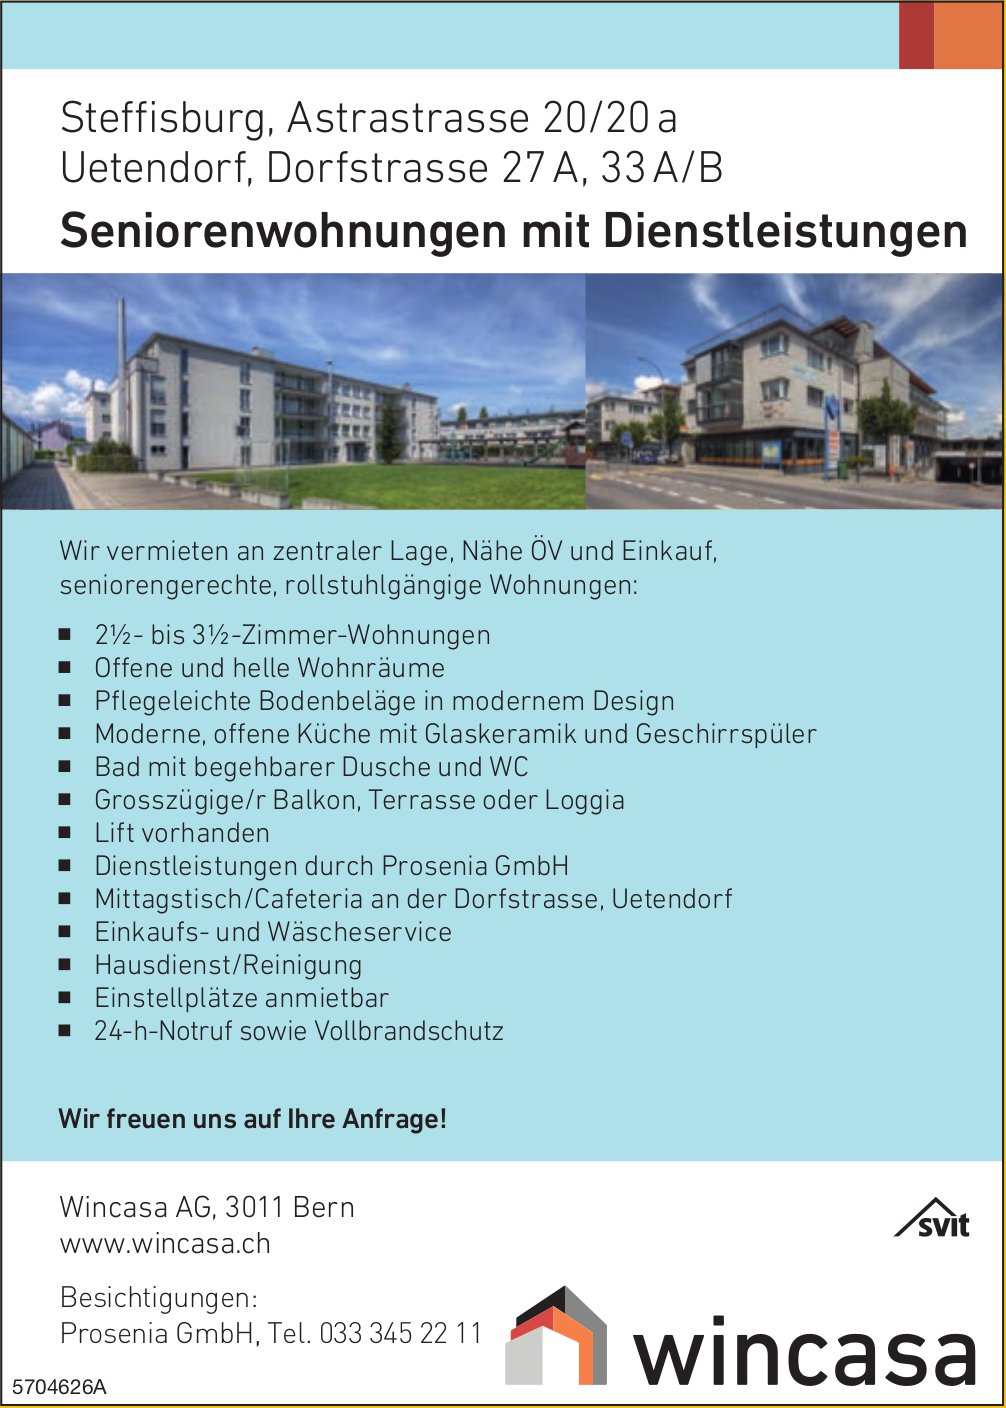 Seniorenwohnungen mit Dienstleistungen, 2.5- bis 3.5-Zimmer-Wohnungen, Steffisburg/Uetendorf, Wincasa Bern, zu vermieten